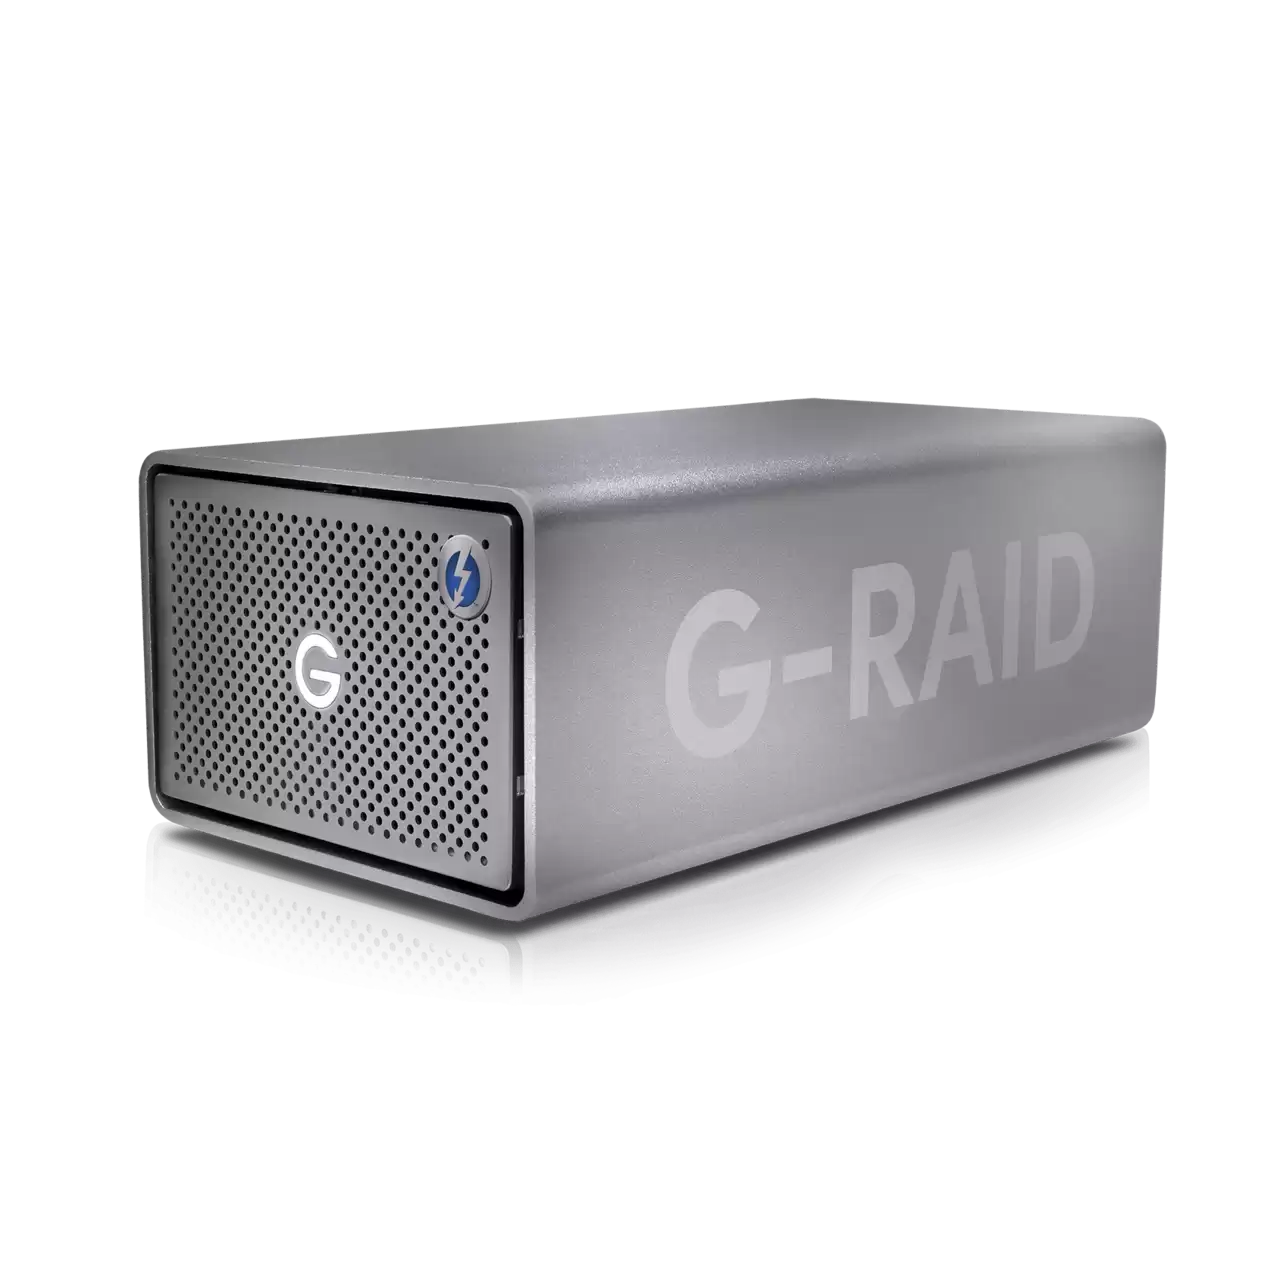 G-RAID 2 40TB USB 